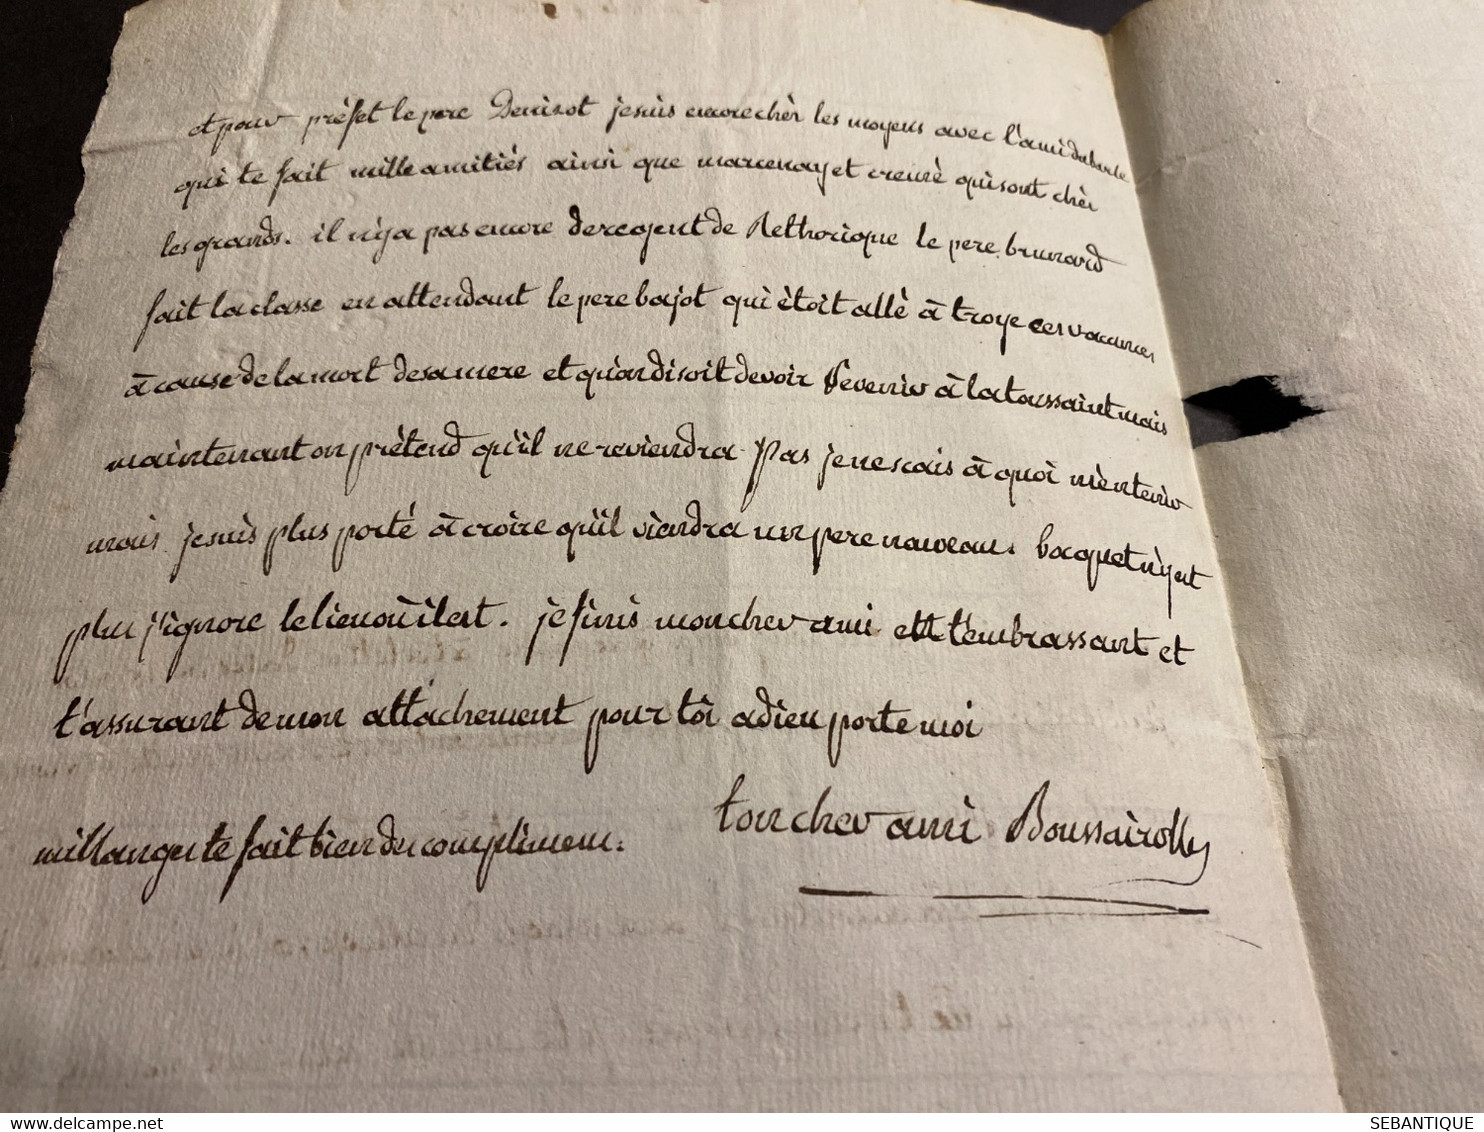 Lettre 1778 collège de Juilly cachet rouge de l’Oratoire + 8° levée ? pour Mr le Mareshal collège du plessis à Paris